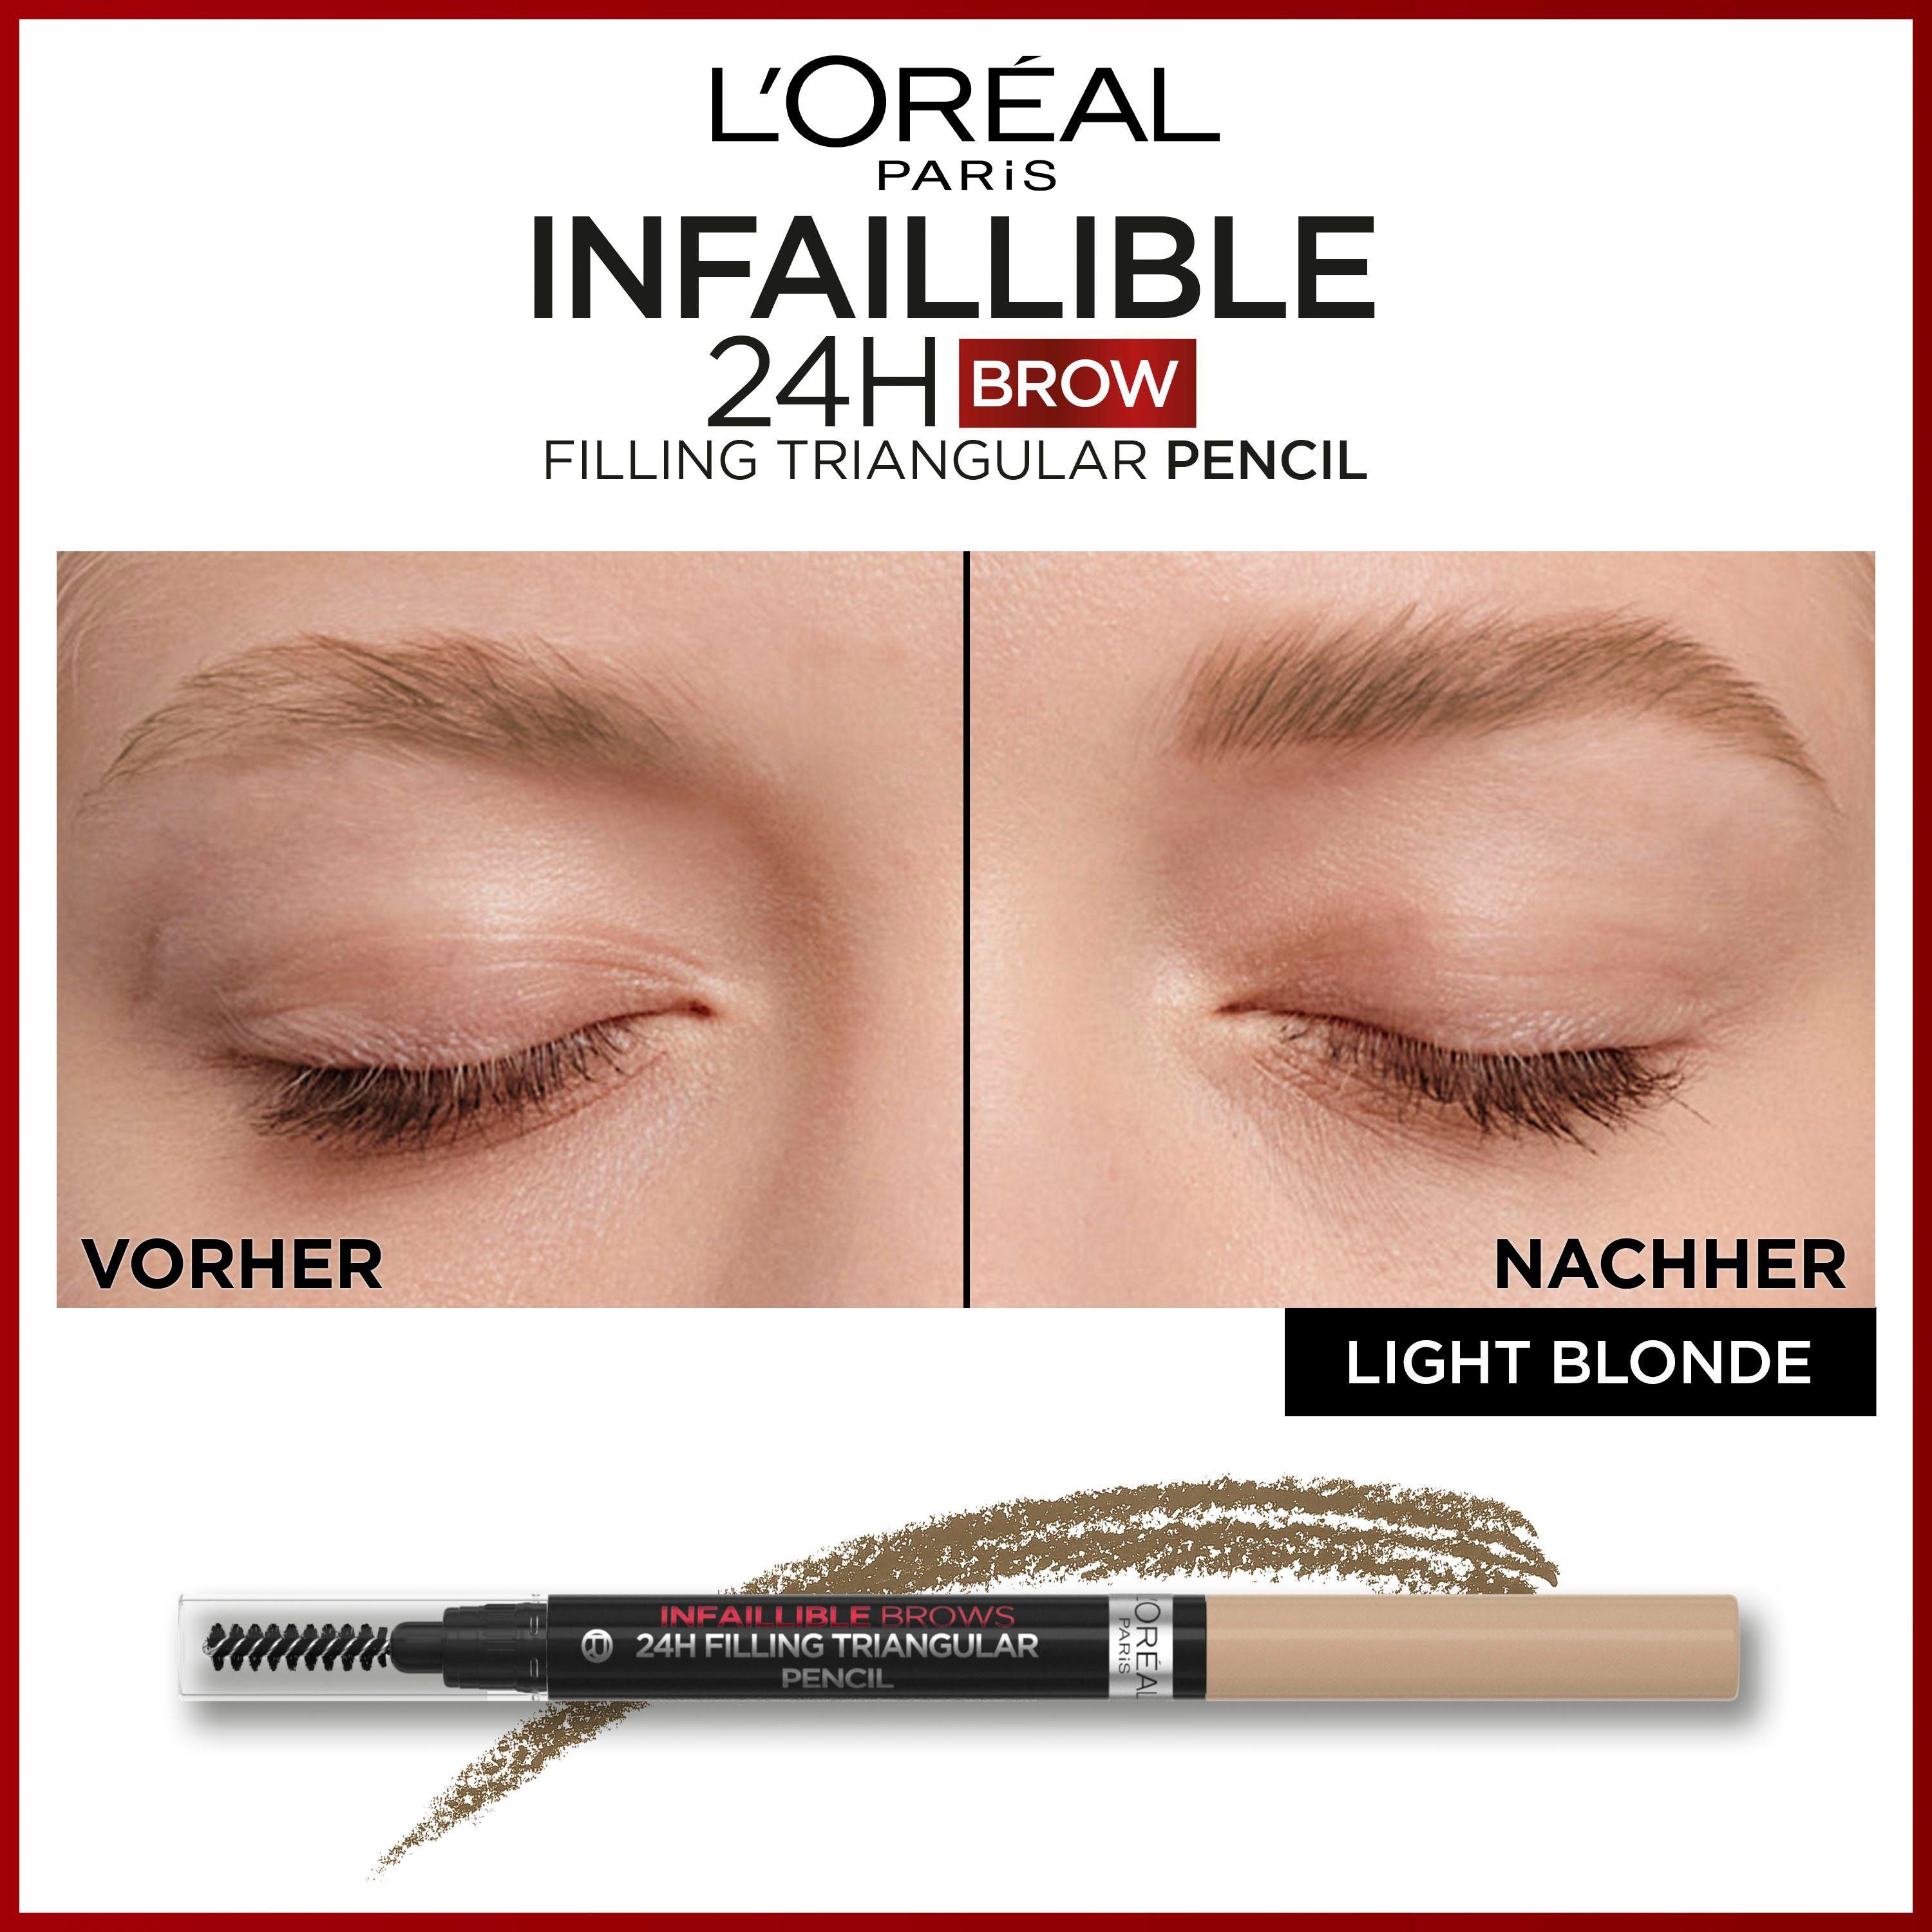 Infaillible L'Oréal Pencil, 24h Brows Browliner Augenbrauen-Stift ausdrucksstarke Paris Augenbrauen PARIS L'ORÉAL für